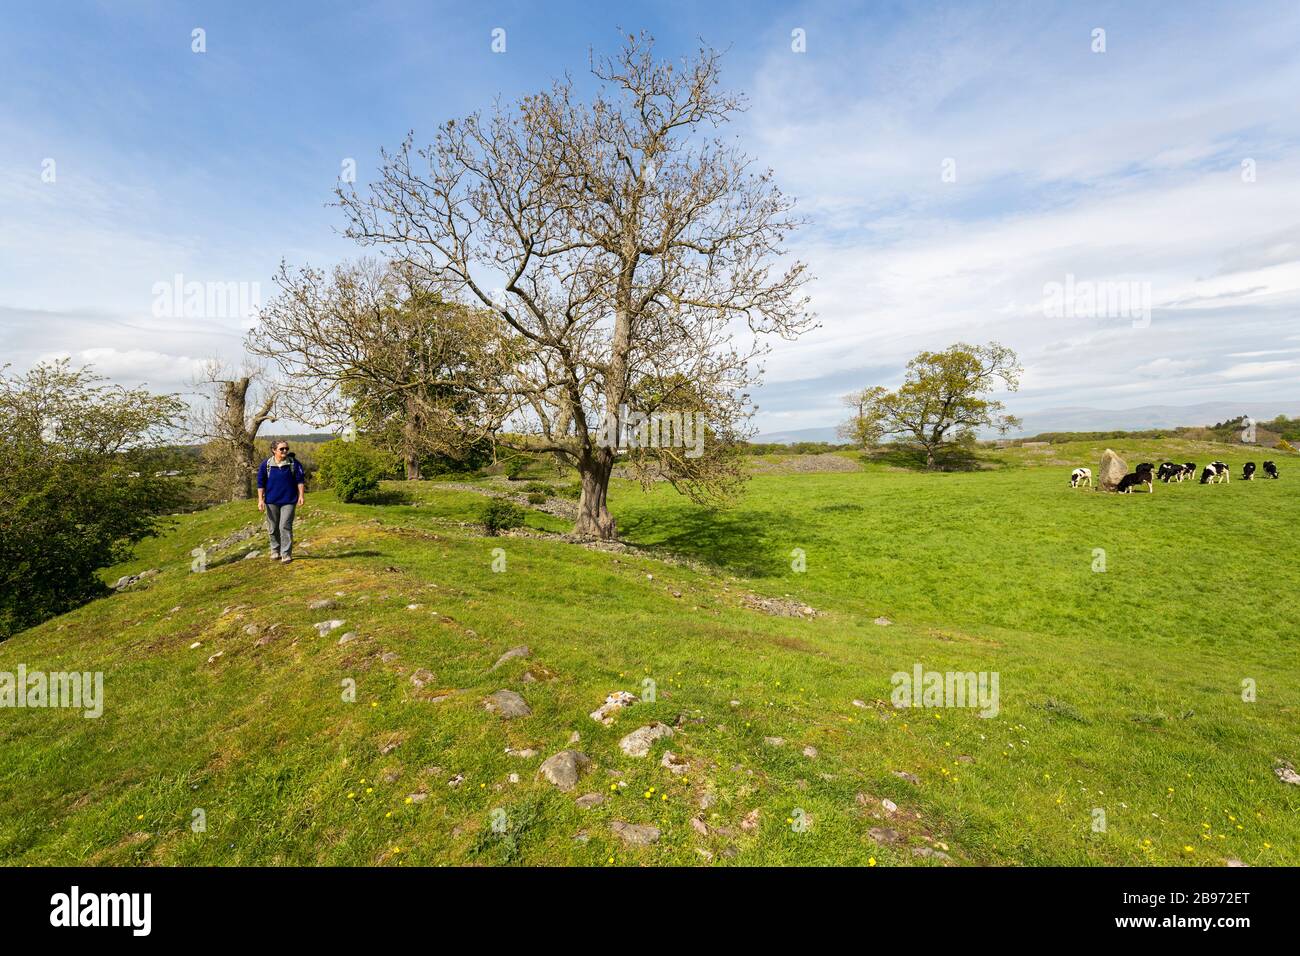 Marcher sur la rive entourant le monument néolithique de Mayburgh Henge, Cumbria, Angleterre, Royaume-Uni Banque D'Images